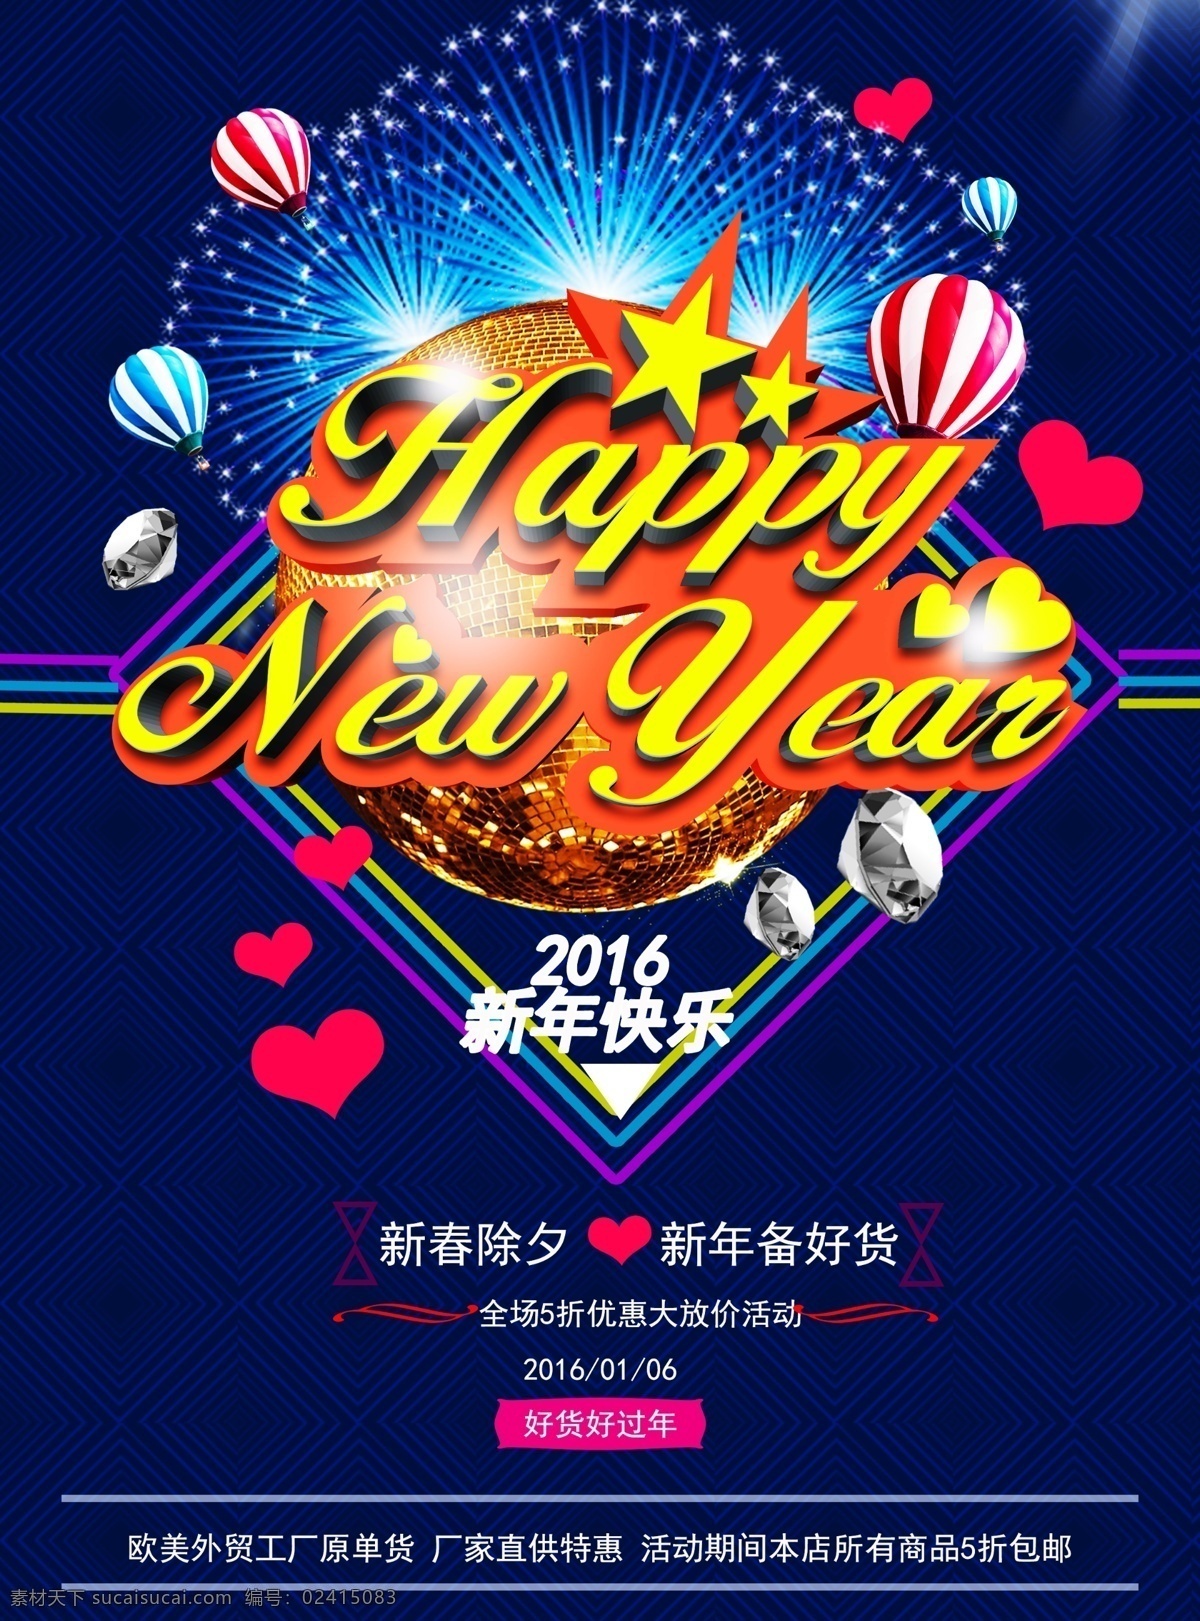 淘宝 2016 新年 快乐 海报 淘宝素材 淘宝设计 淘宝模板下载 蓝色